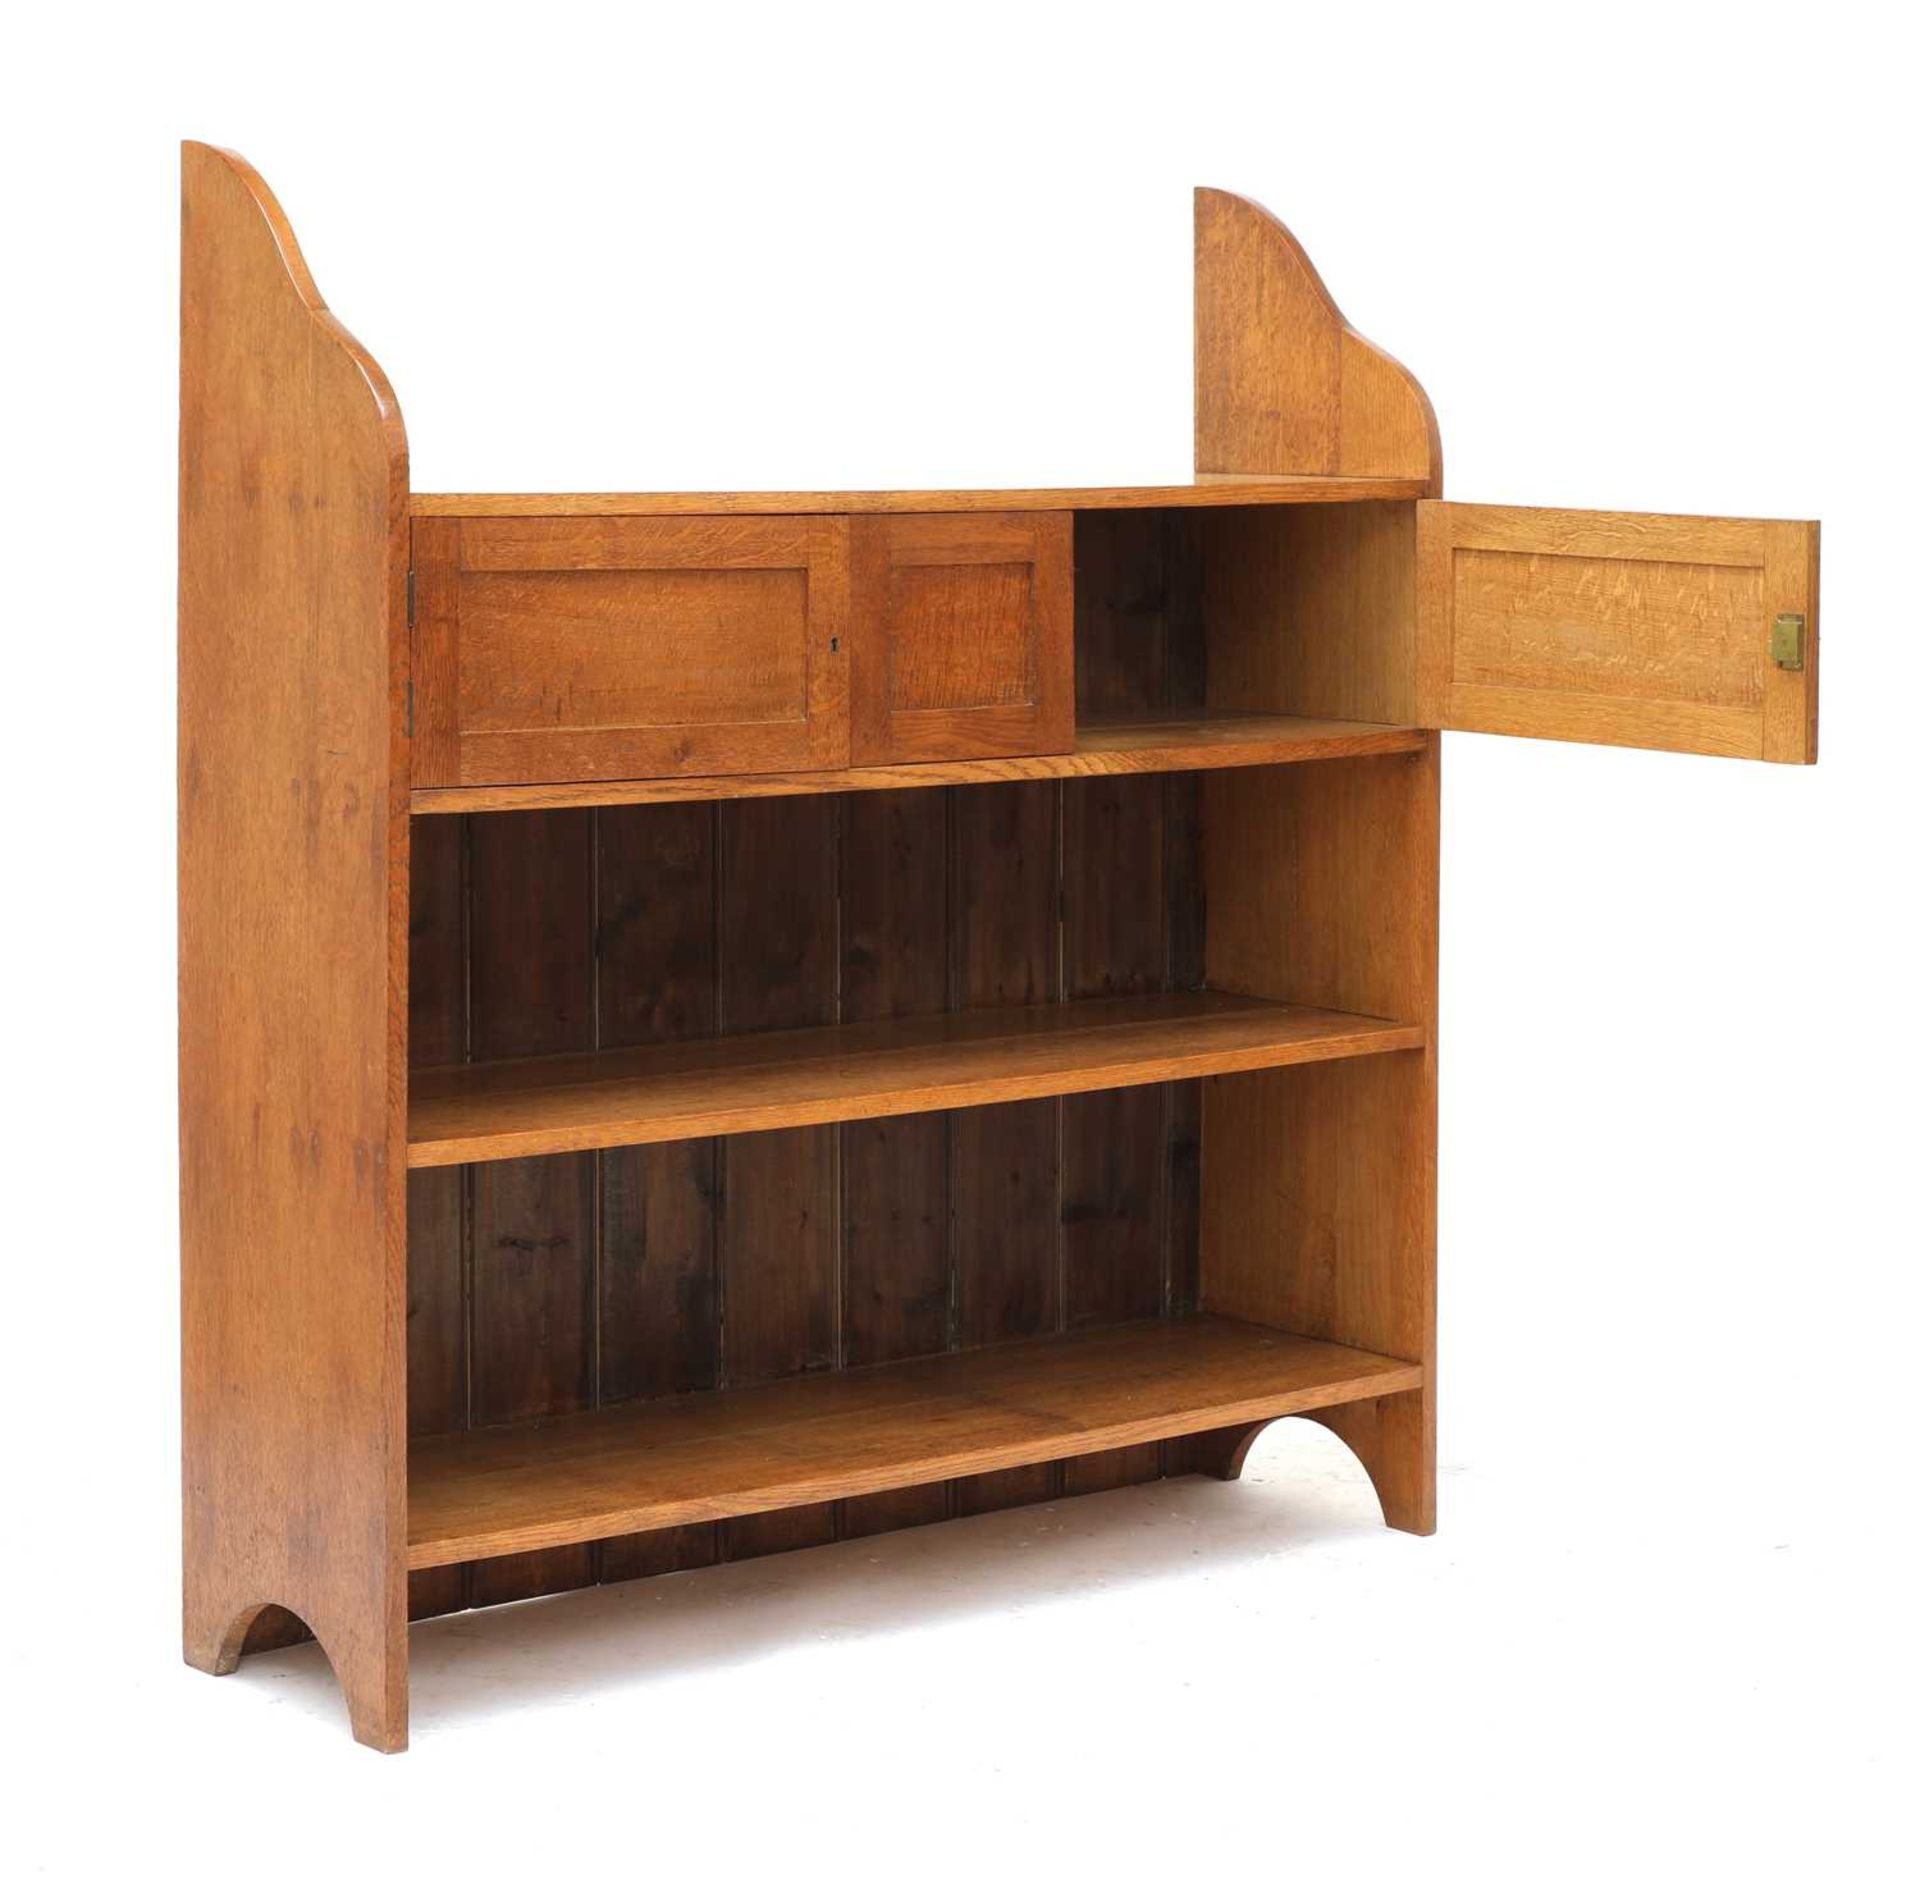 An Heal's-style oak open bookcase,